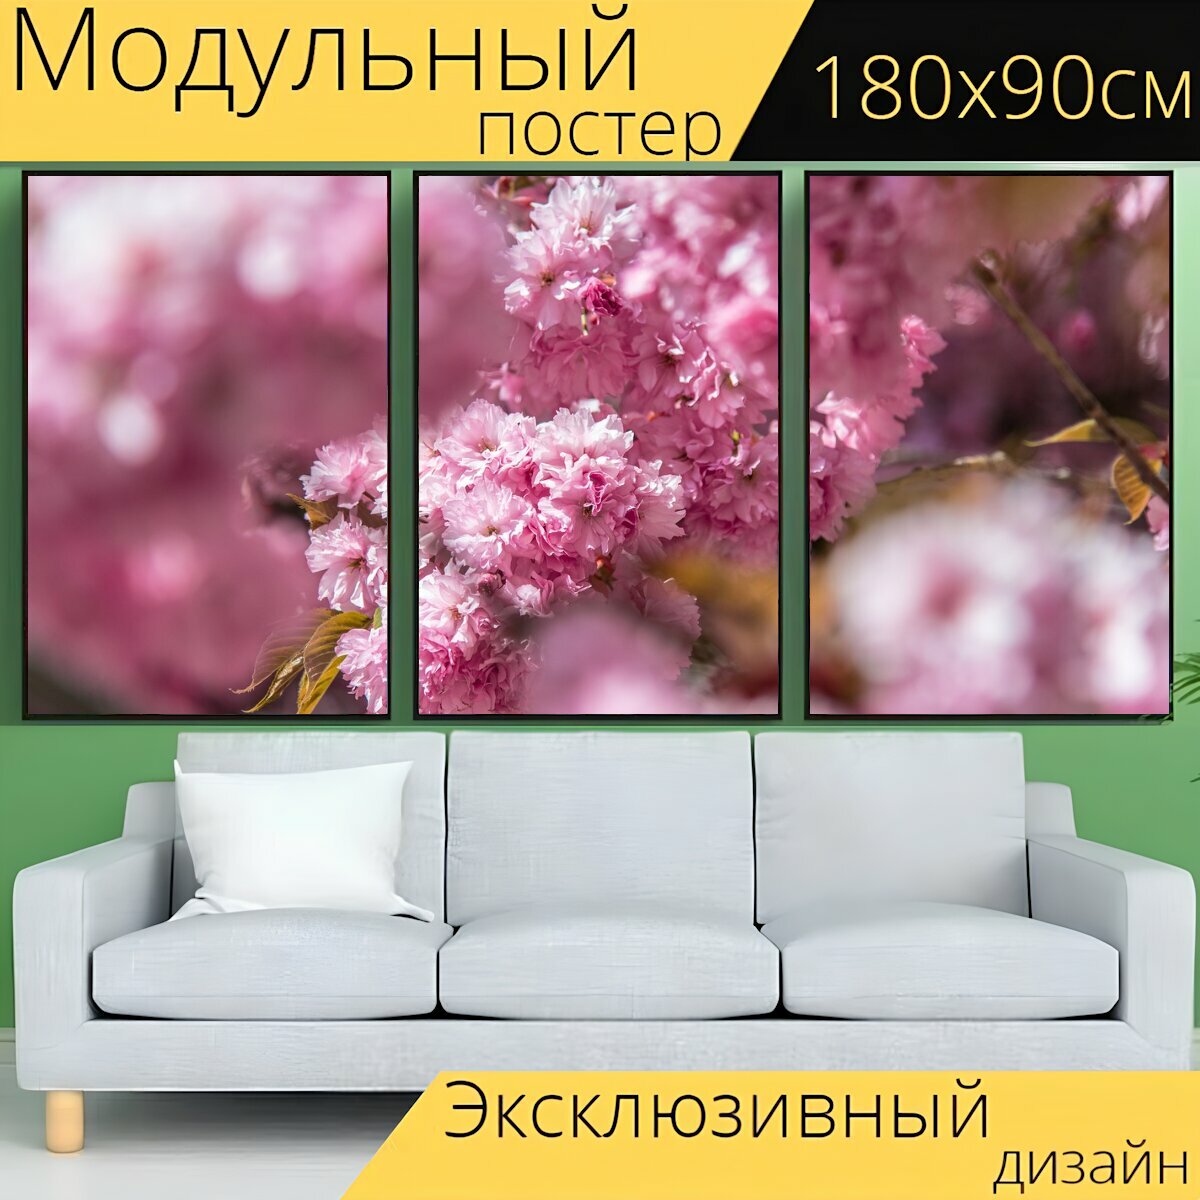 Модульный постер "Розовый, цветок, дерево" 180 x 90 см. для интерьера